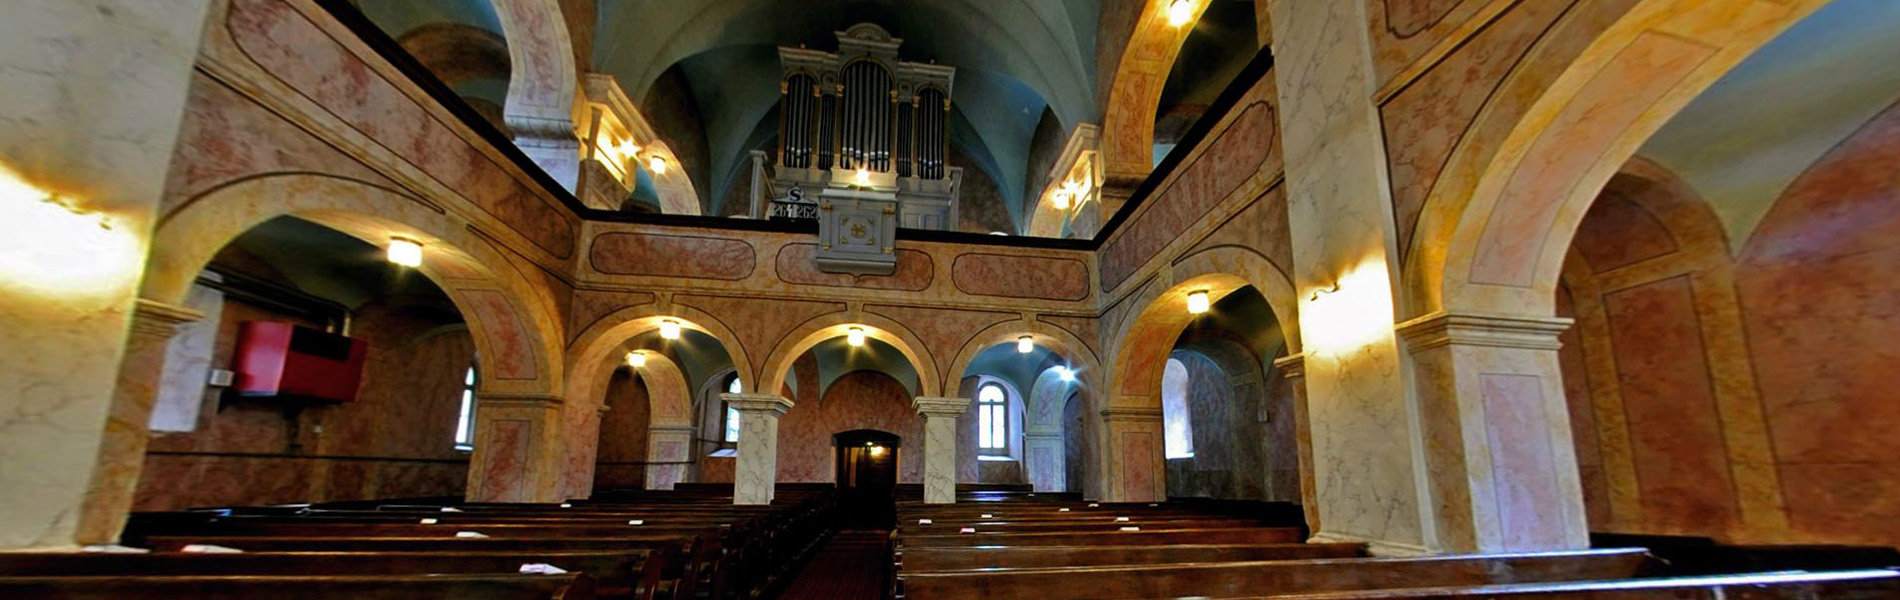 Székelyudvarhely belvárosi református templom 